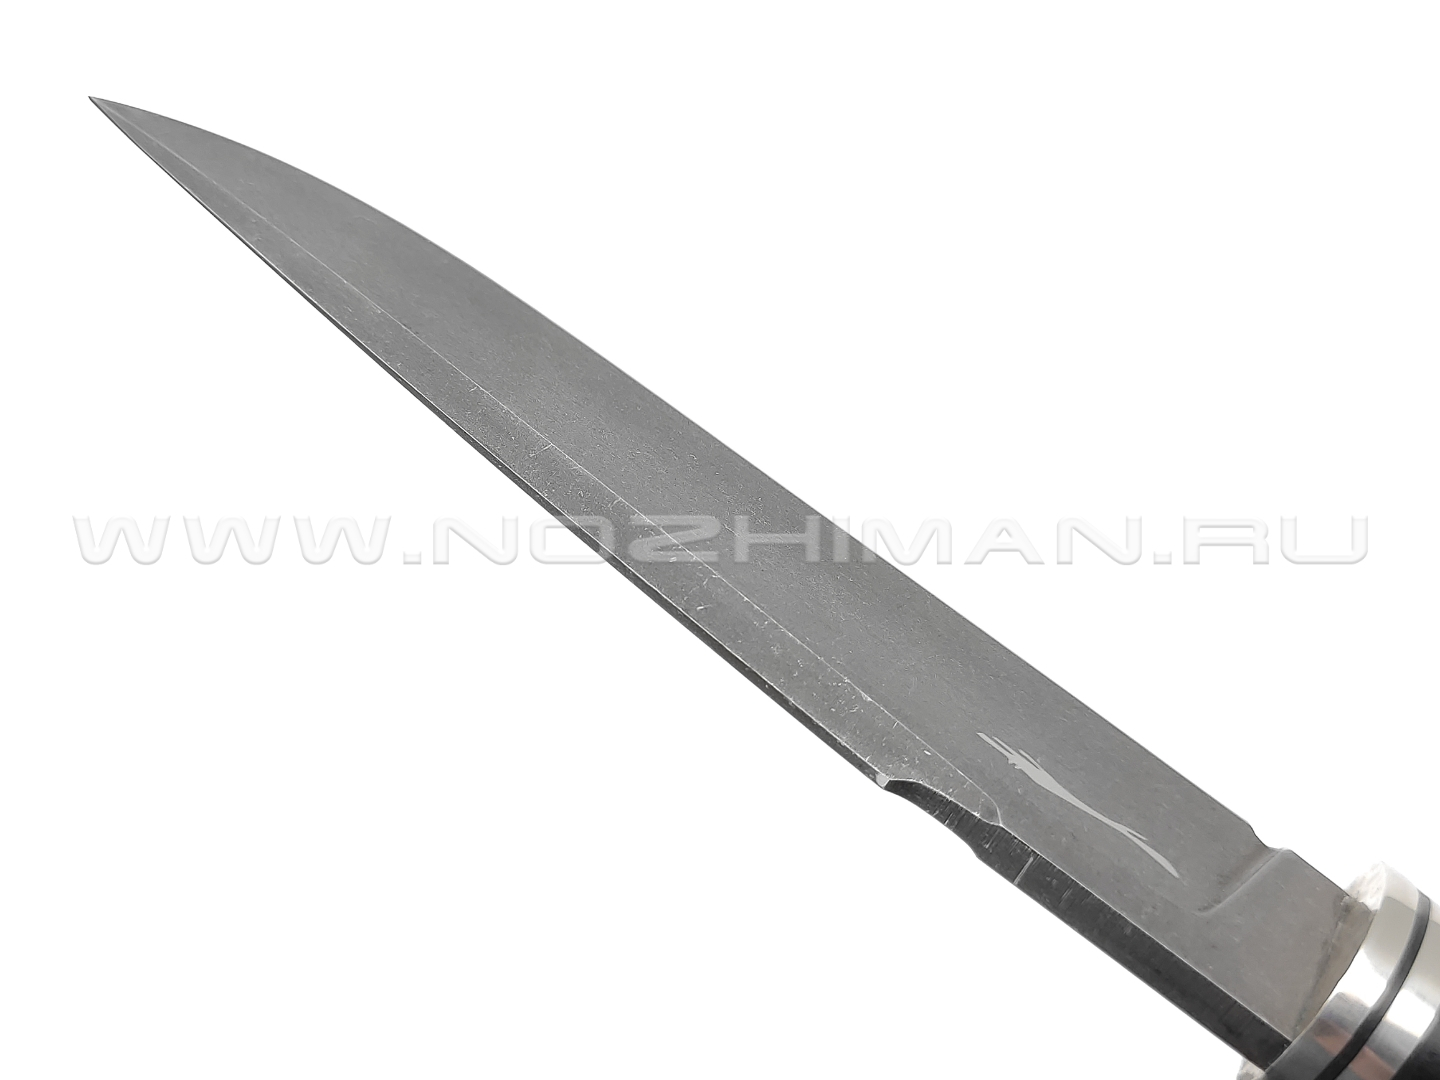 Волчий Век нож Слон Mod. сталь D2 WA blackwash, рукоять G10, нейзильбер